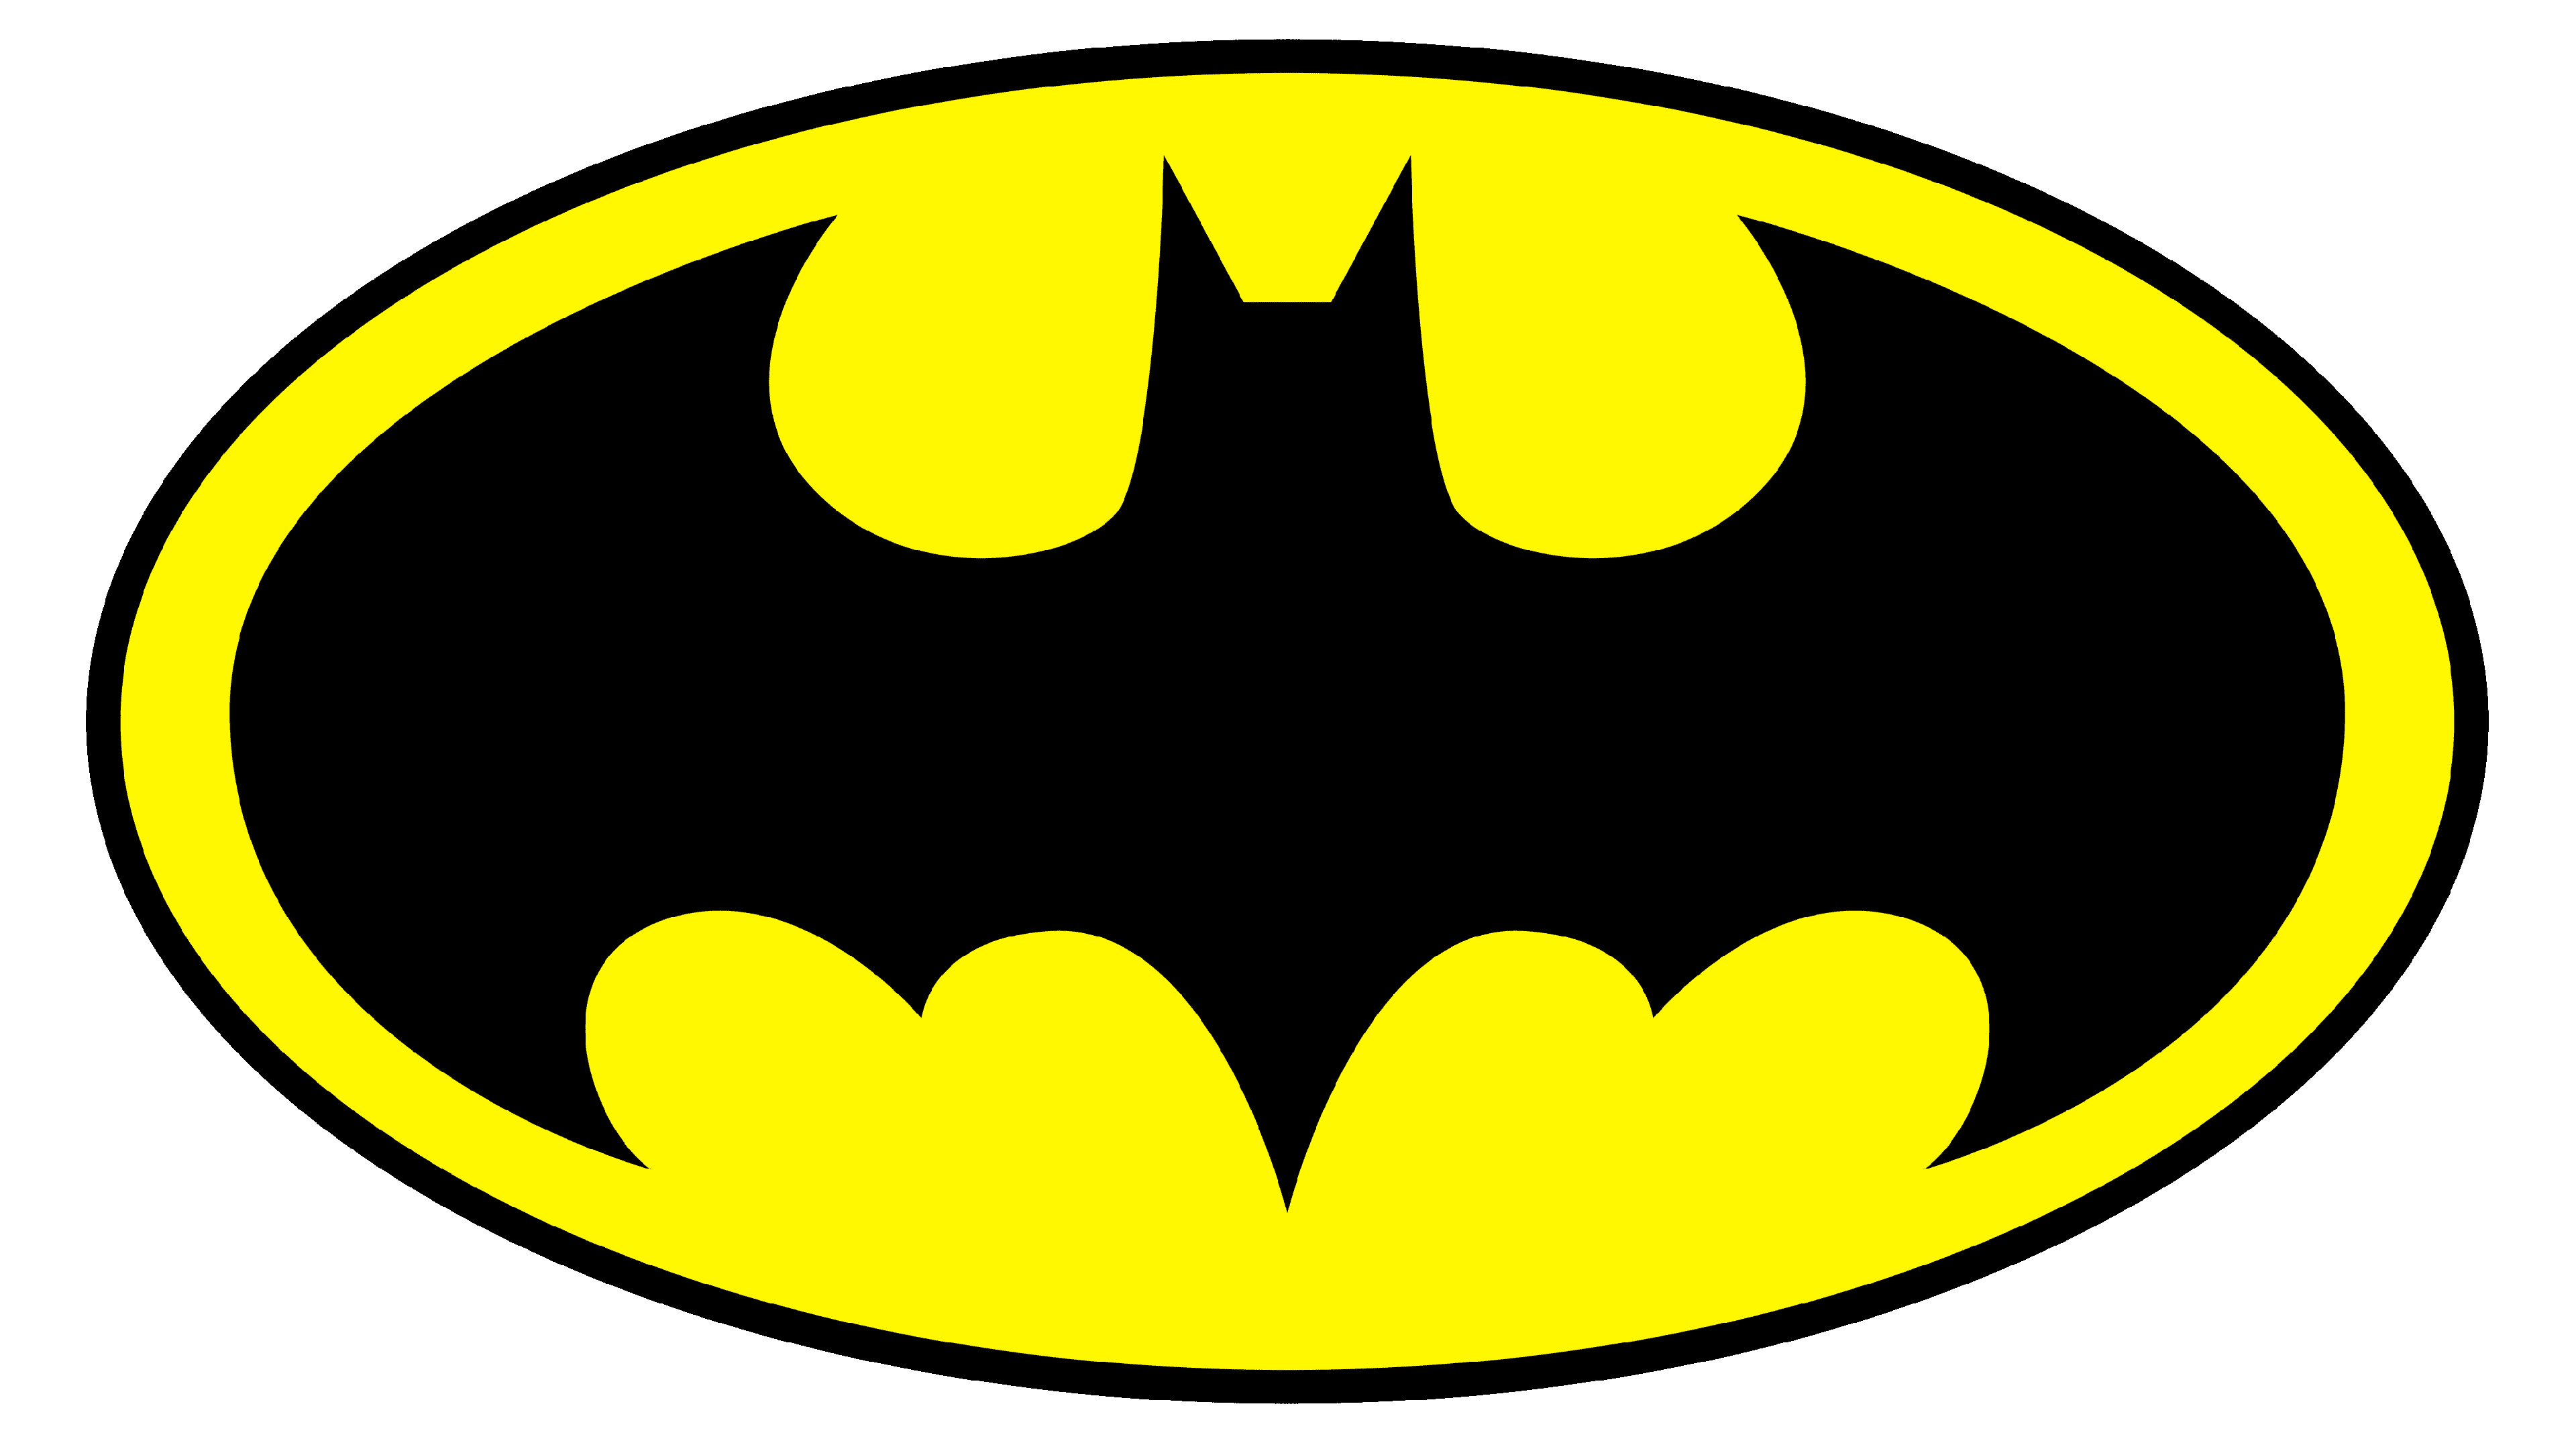 Batman Symbol PNG Image